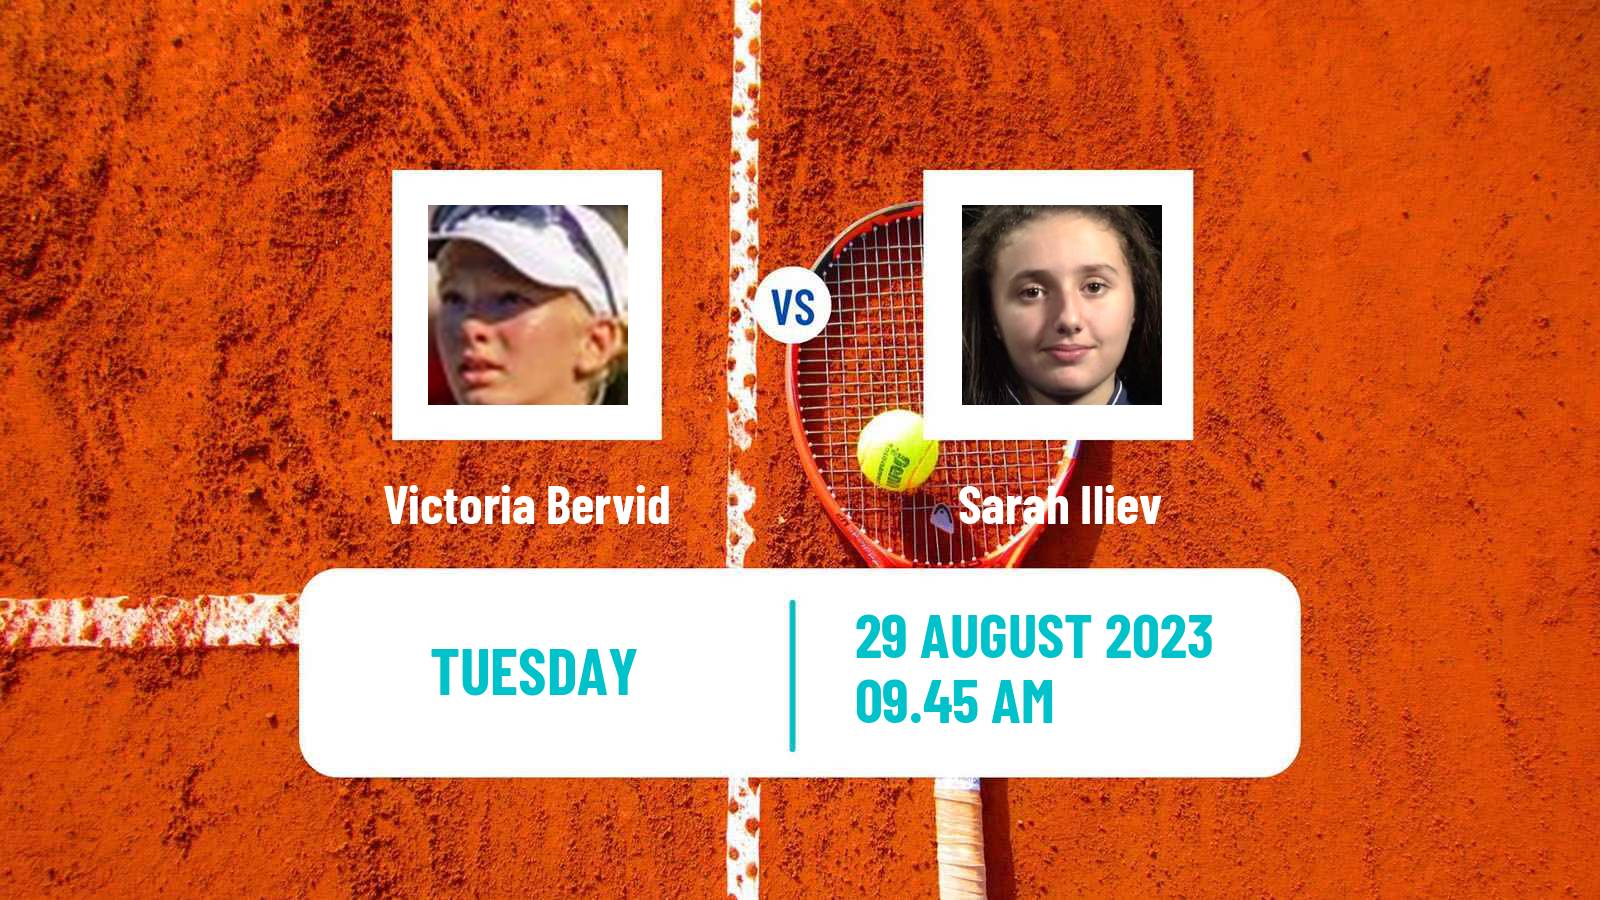 Tennis ITF W60 Prague 2 Women Victoria Bervid - Sarah Iliev